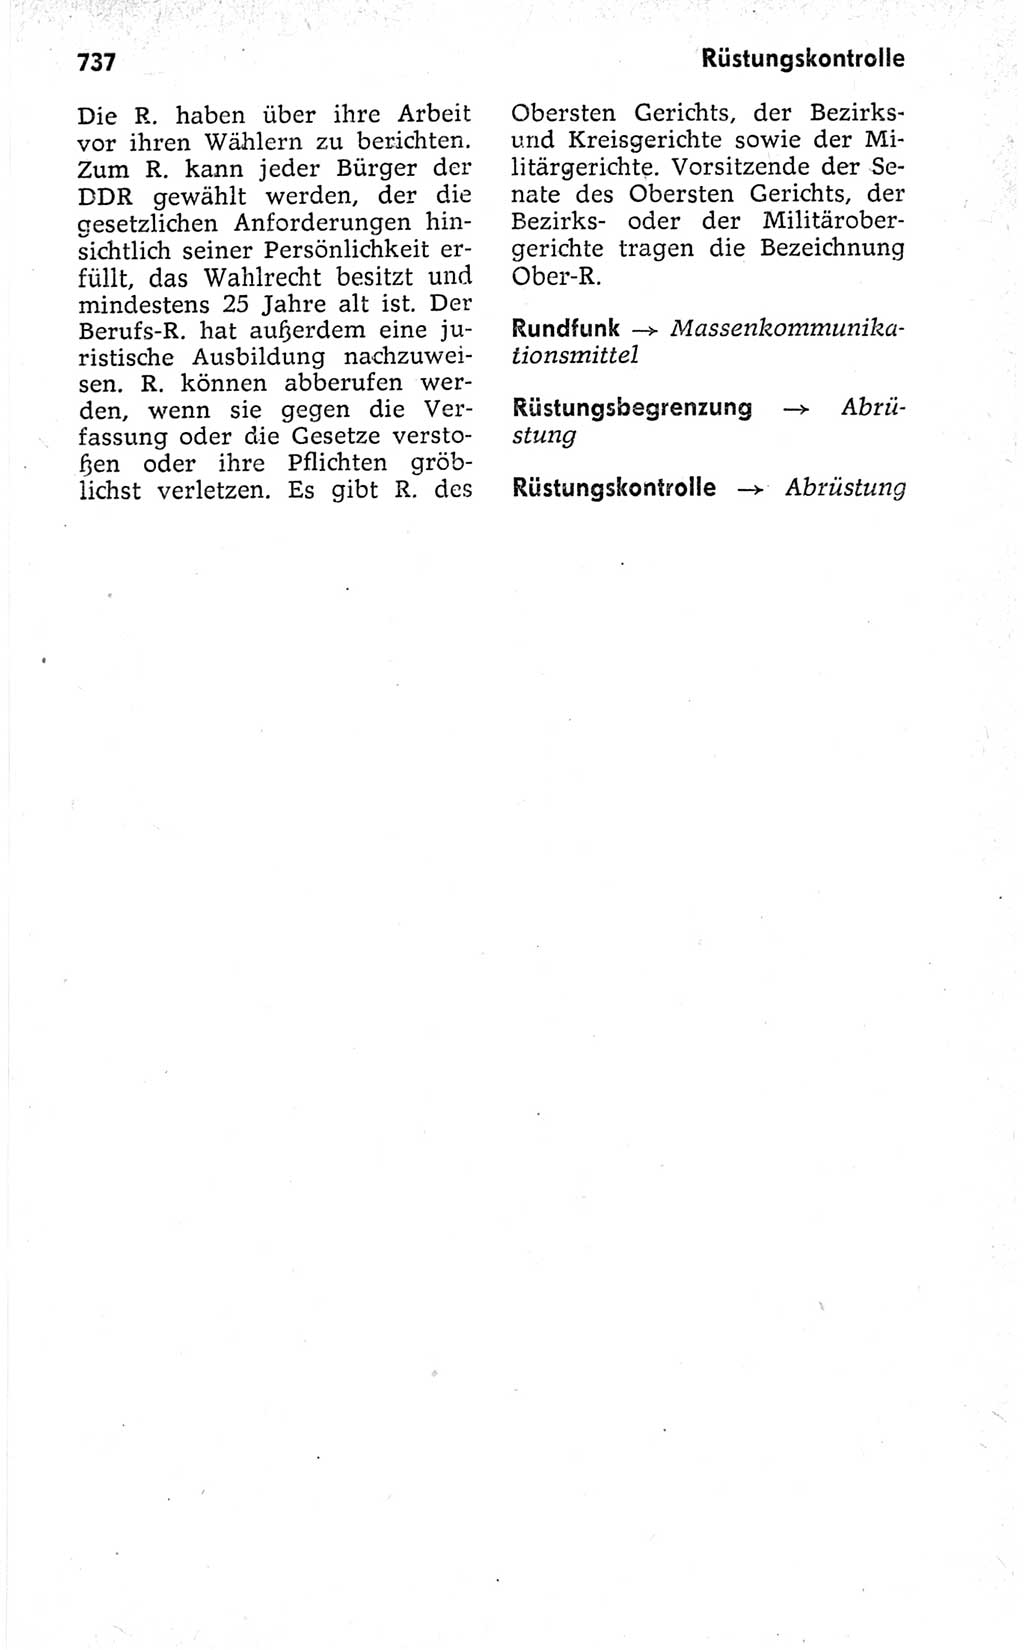 Kleines politisches Wörterbuch [Deutsche Demokratische Republik (DDR)] 1973, Seite 737 (Kl. pol. Wb. DDR 1973, S. 737)